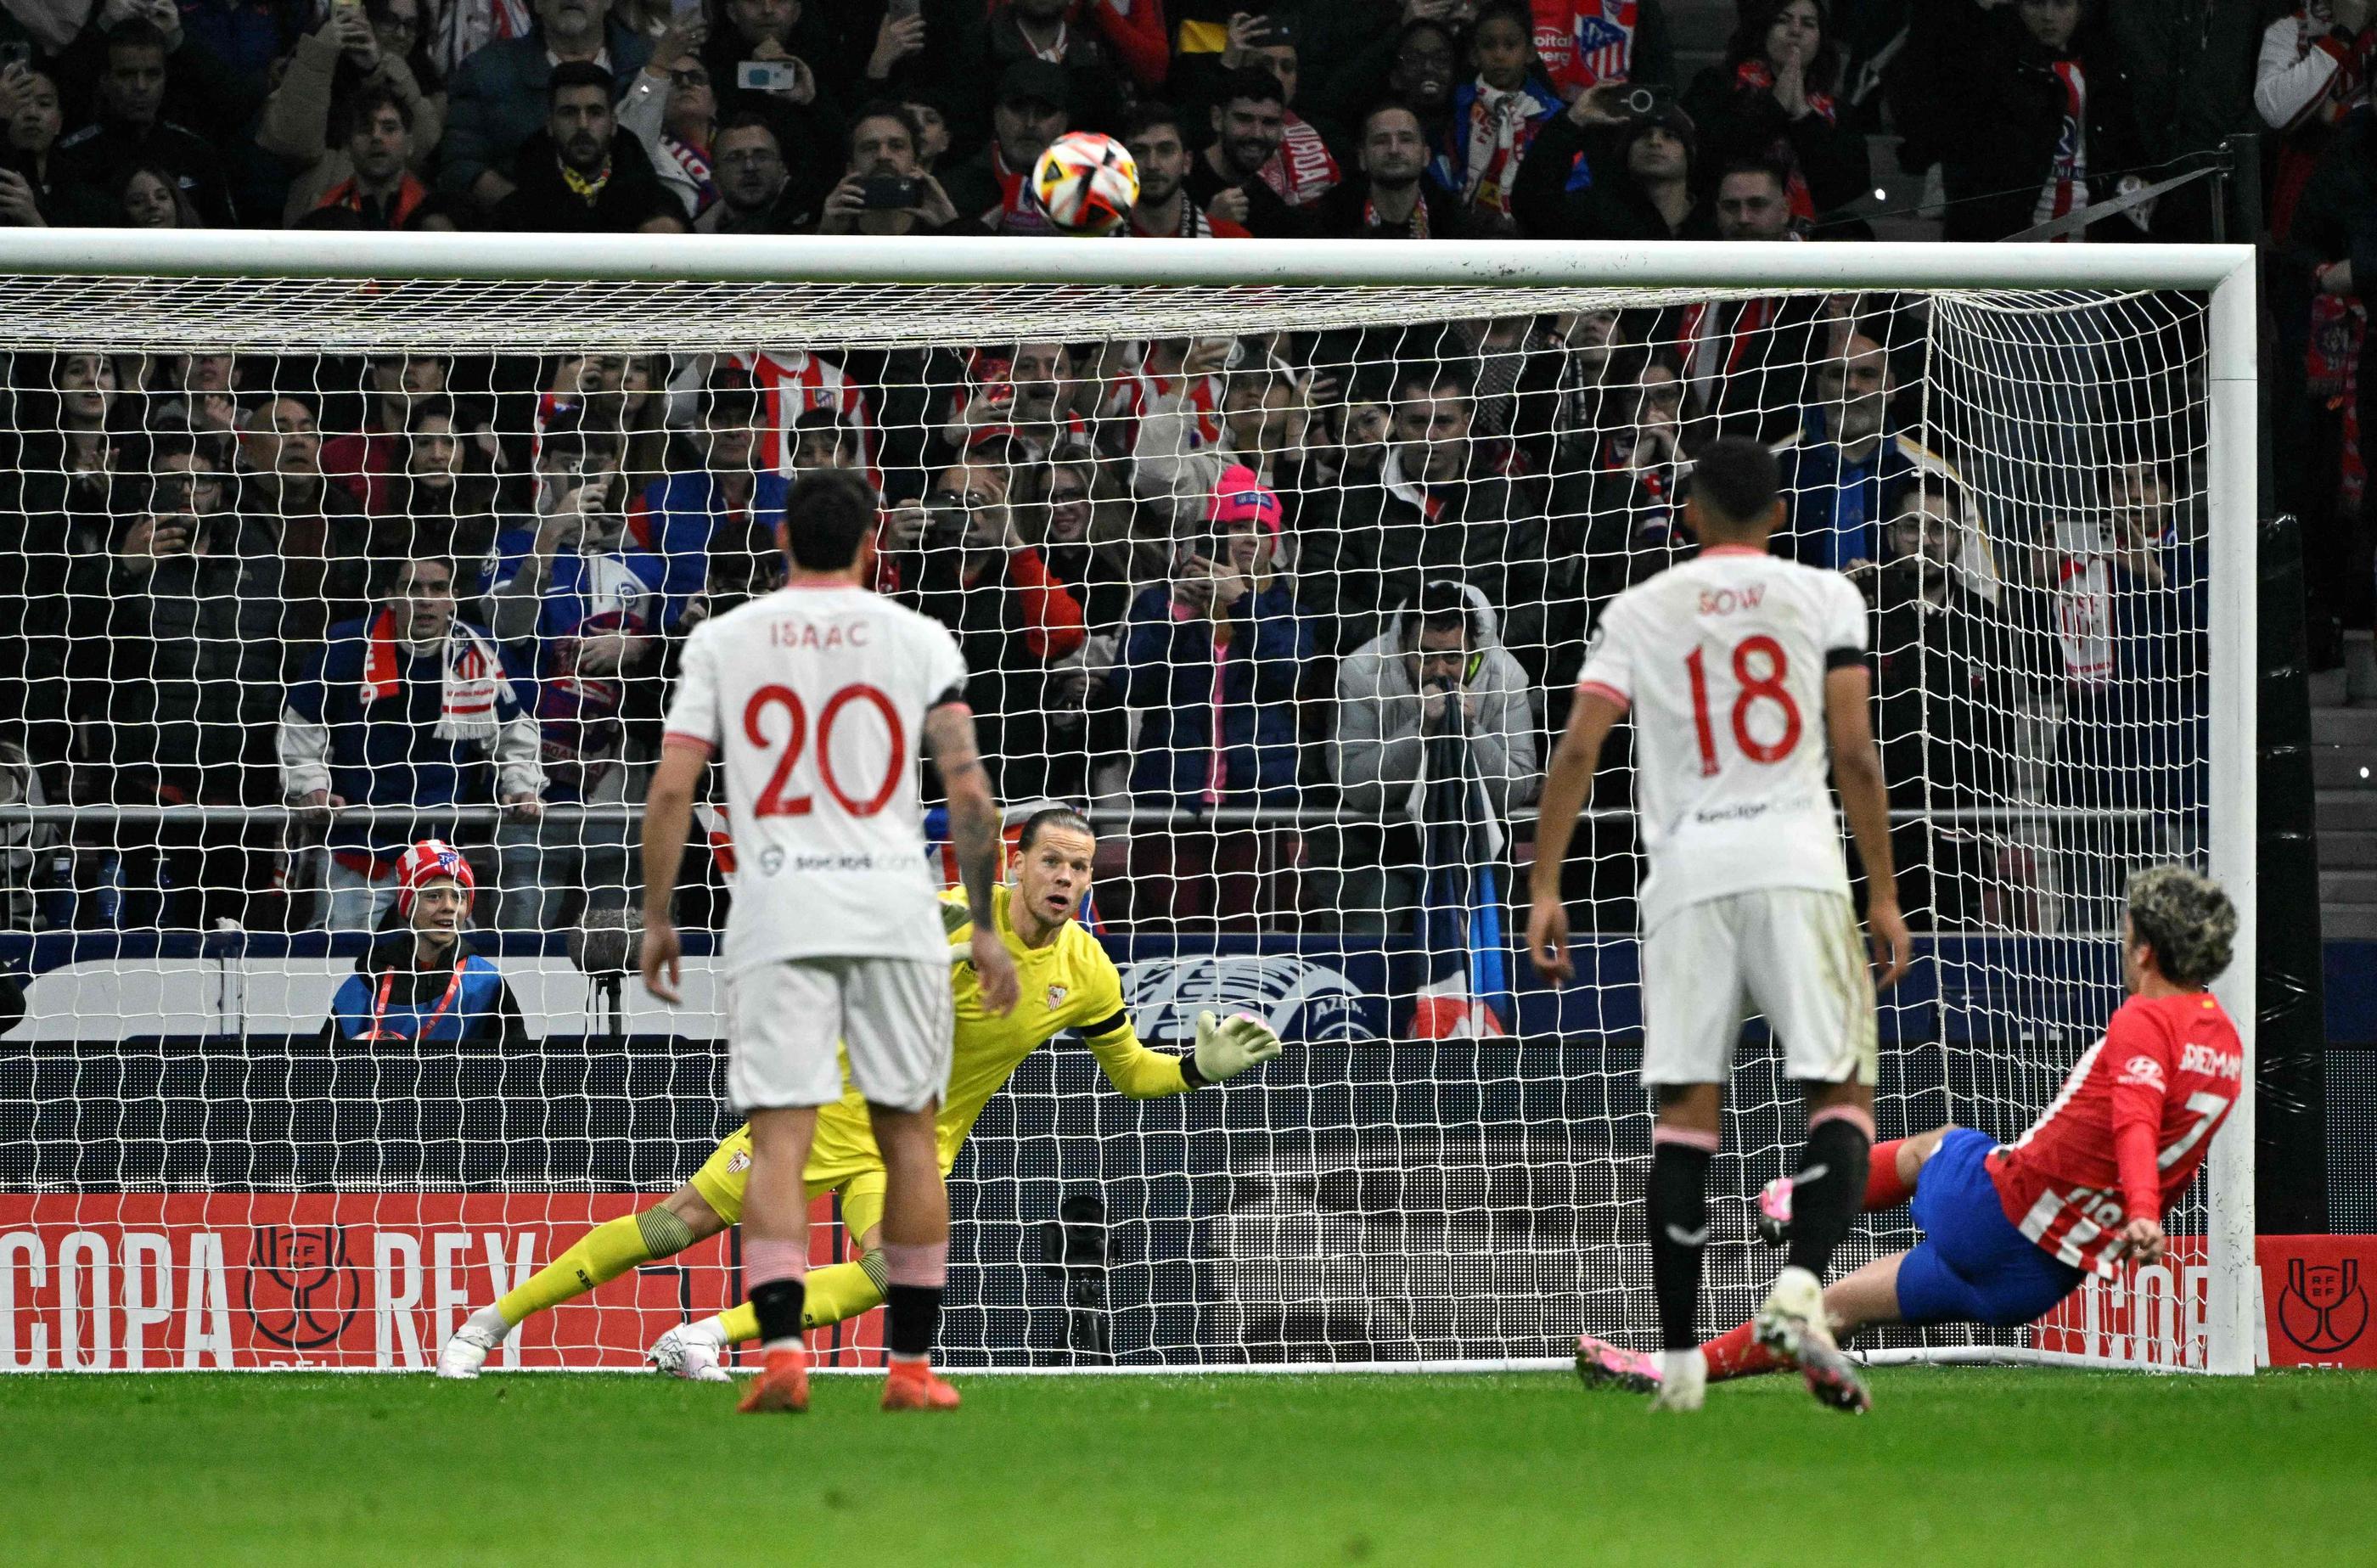 En glissant juste avant sa frappe, Antoine Griezmann a raté un pénalty pour l'Atletico Madrid en première période. AFP